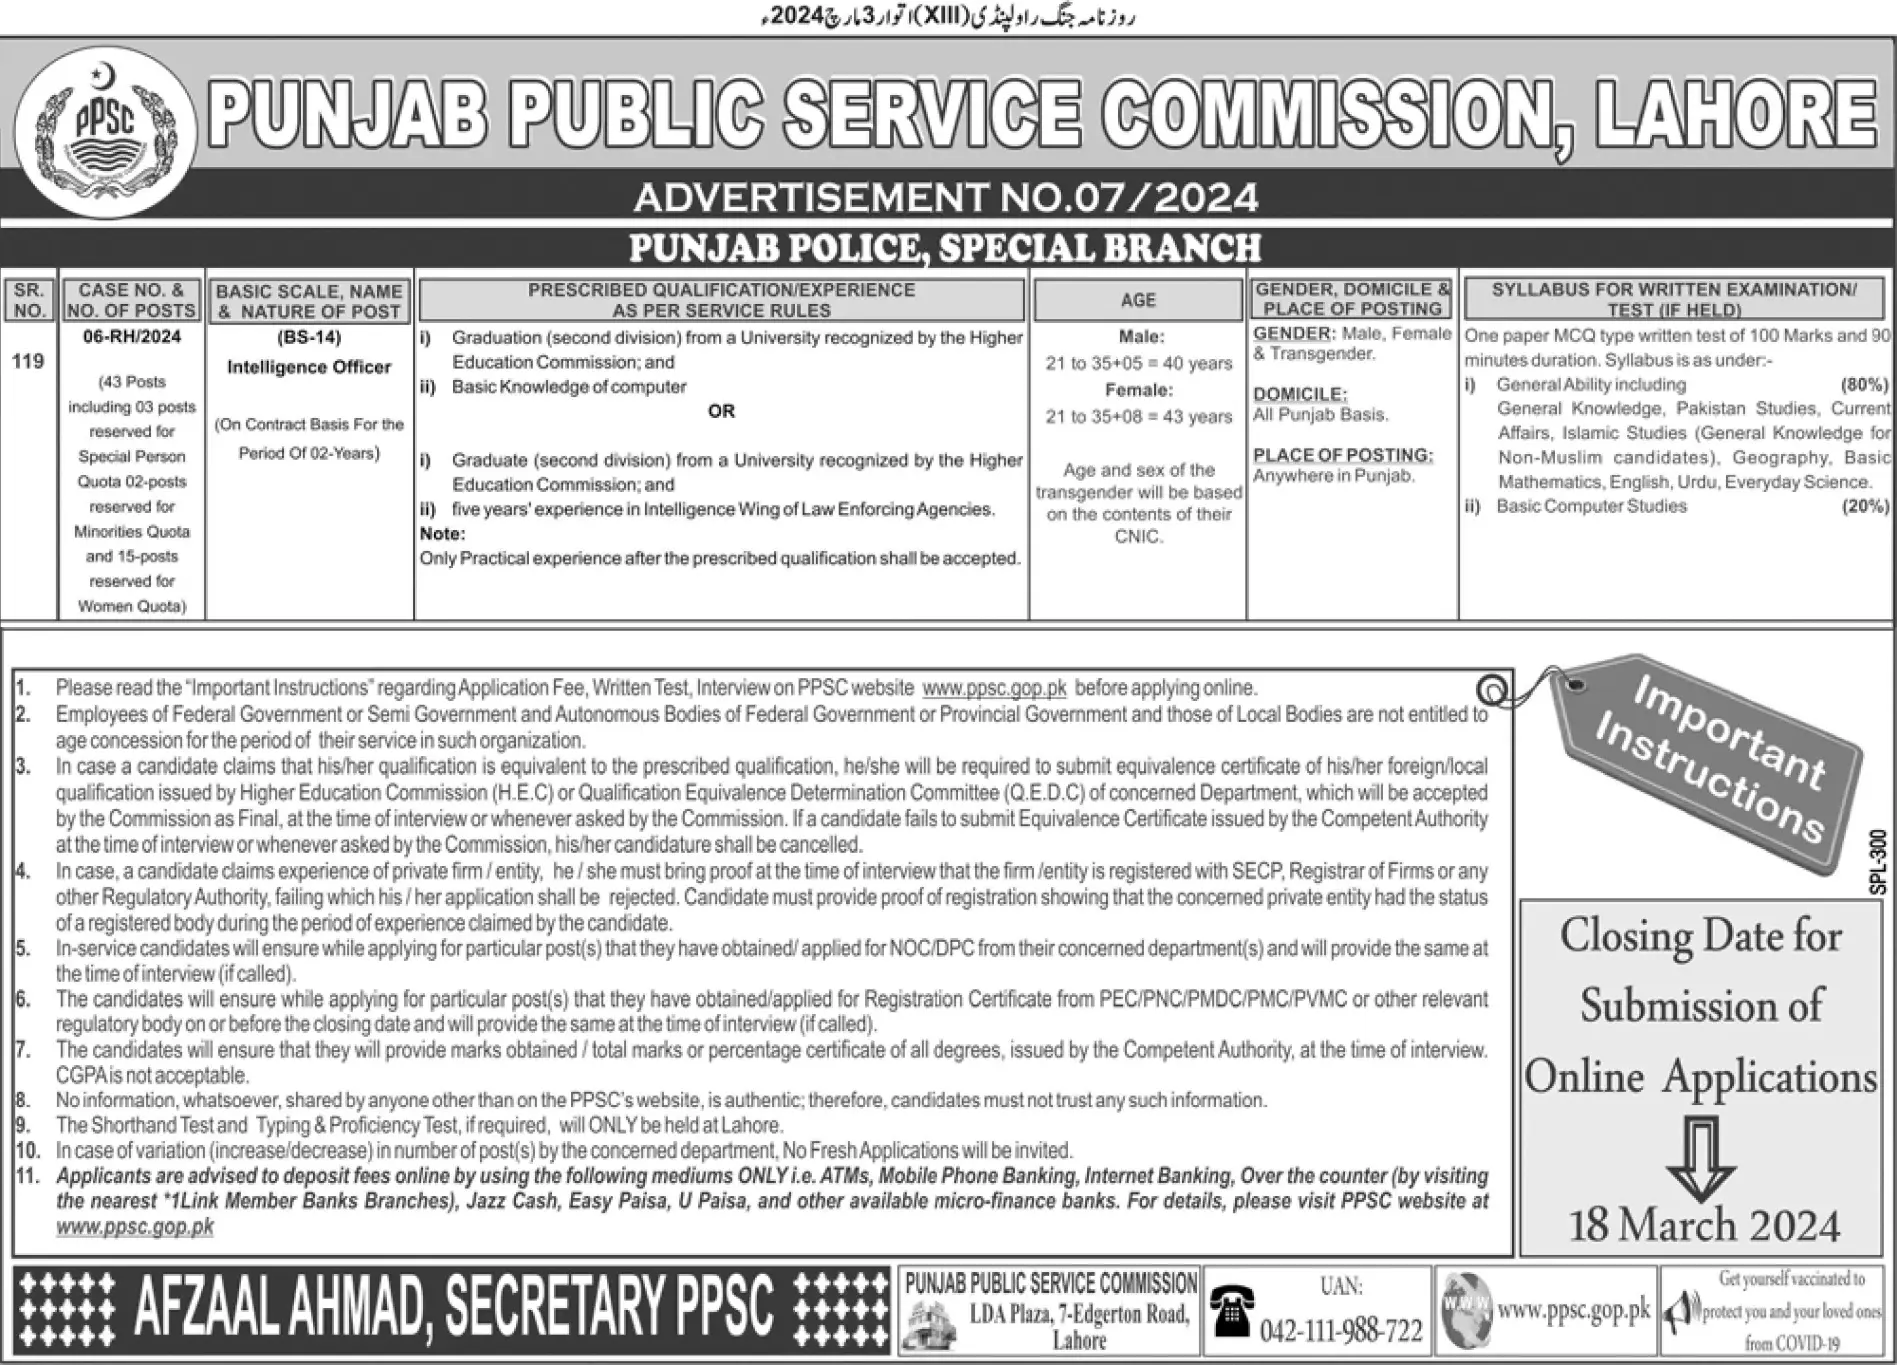 Special Branch of Punjab Police Vacancies